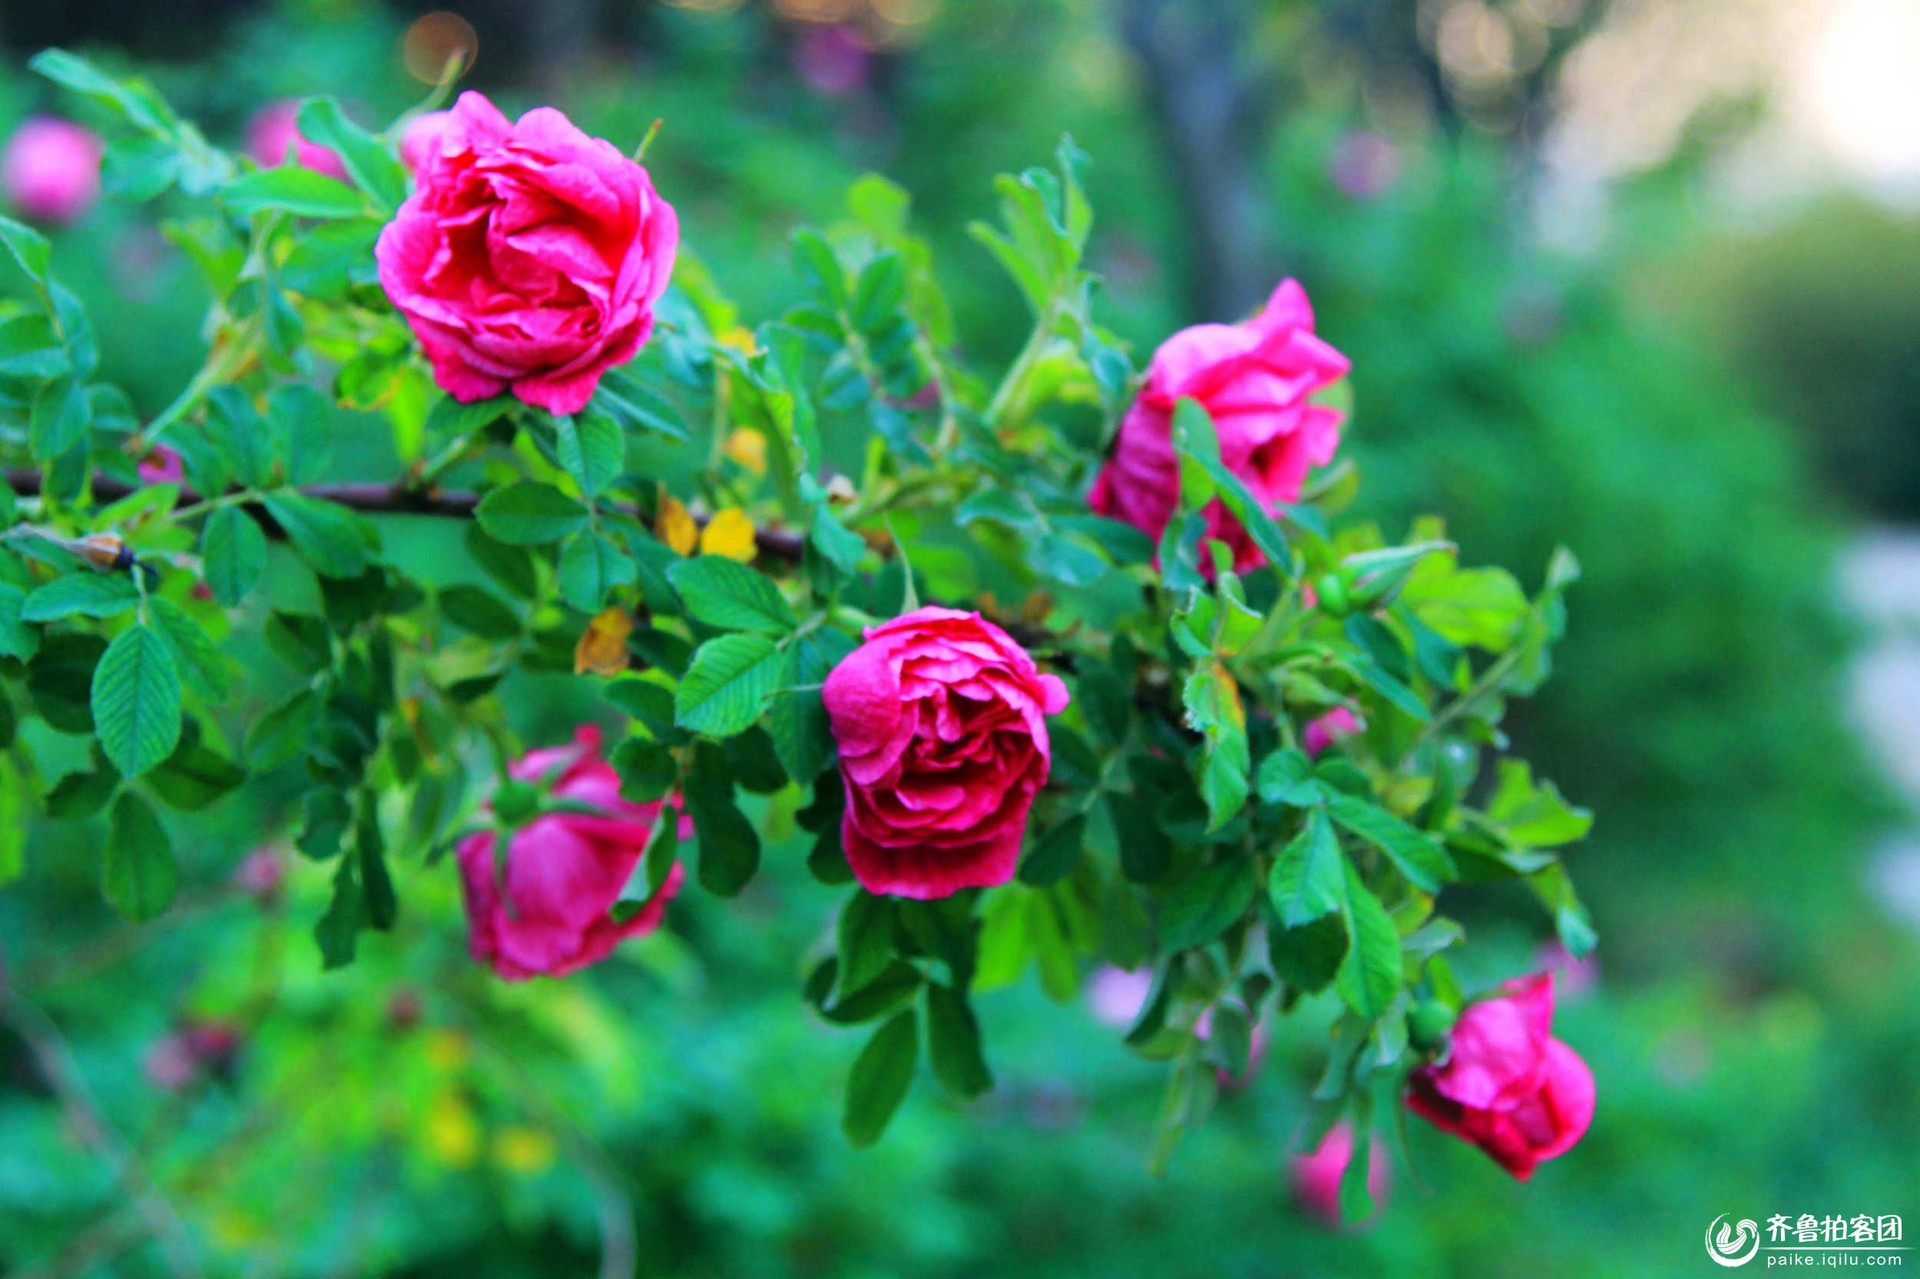 野玫瑰 花 玫瑰 - Pixabay上的免费照片 - Pixabay